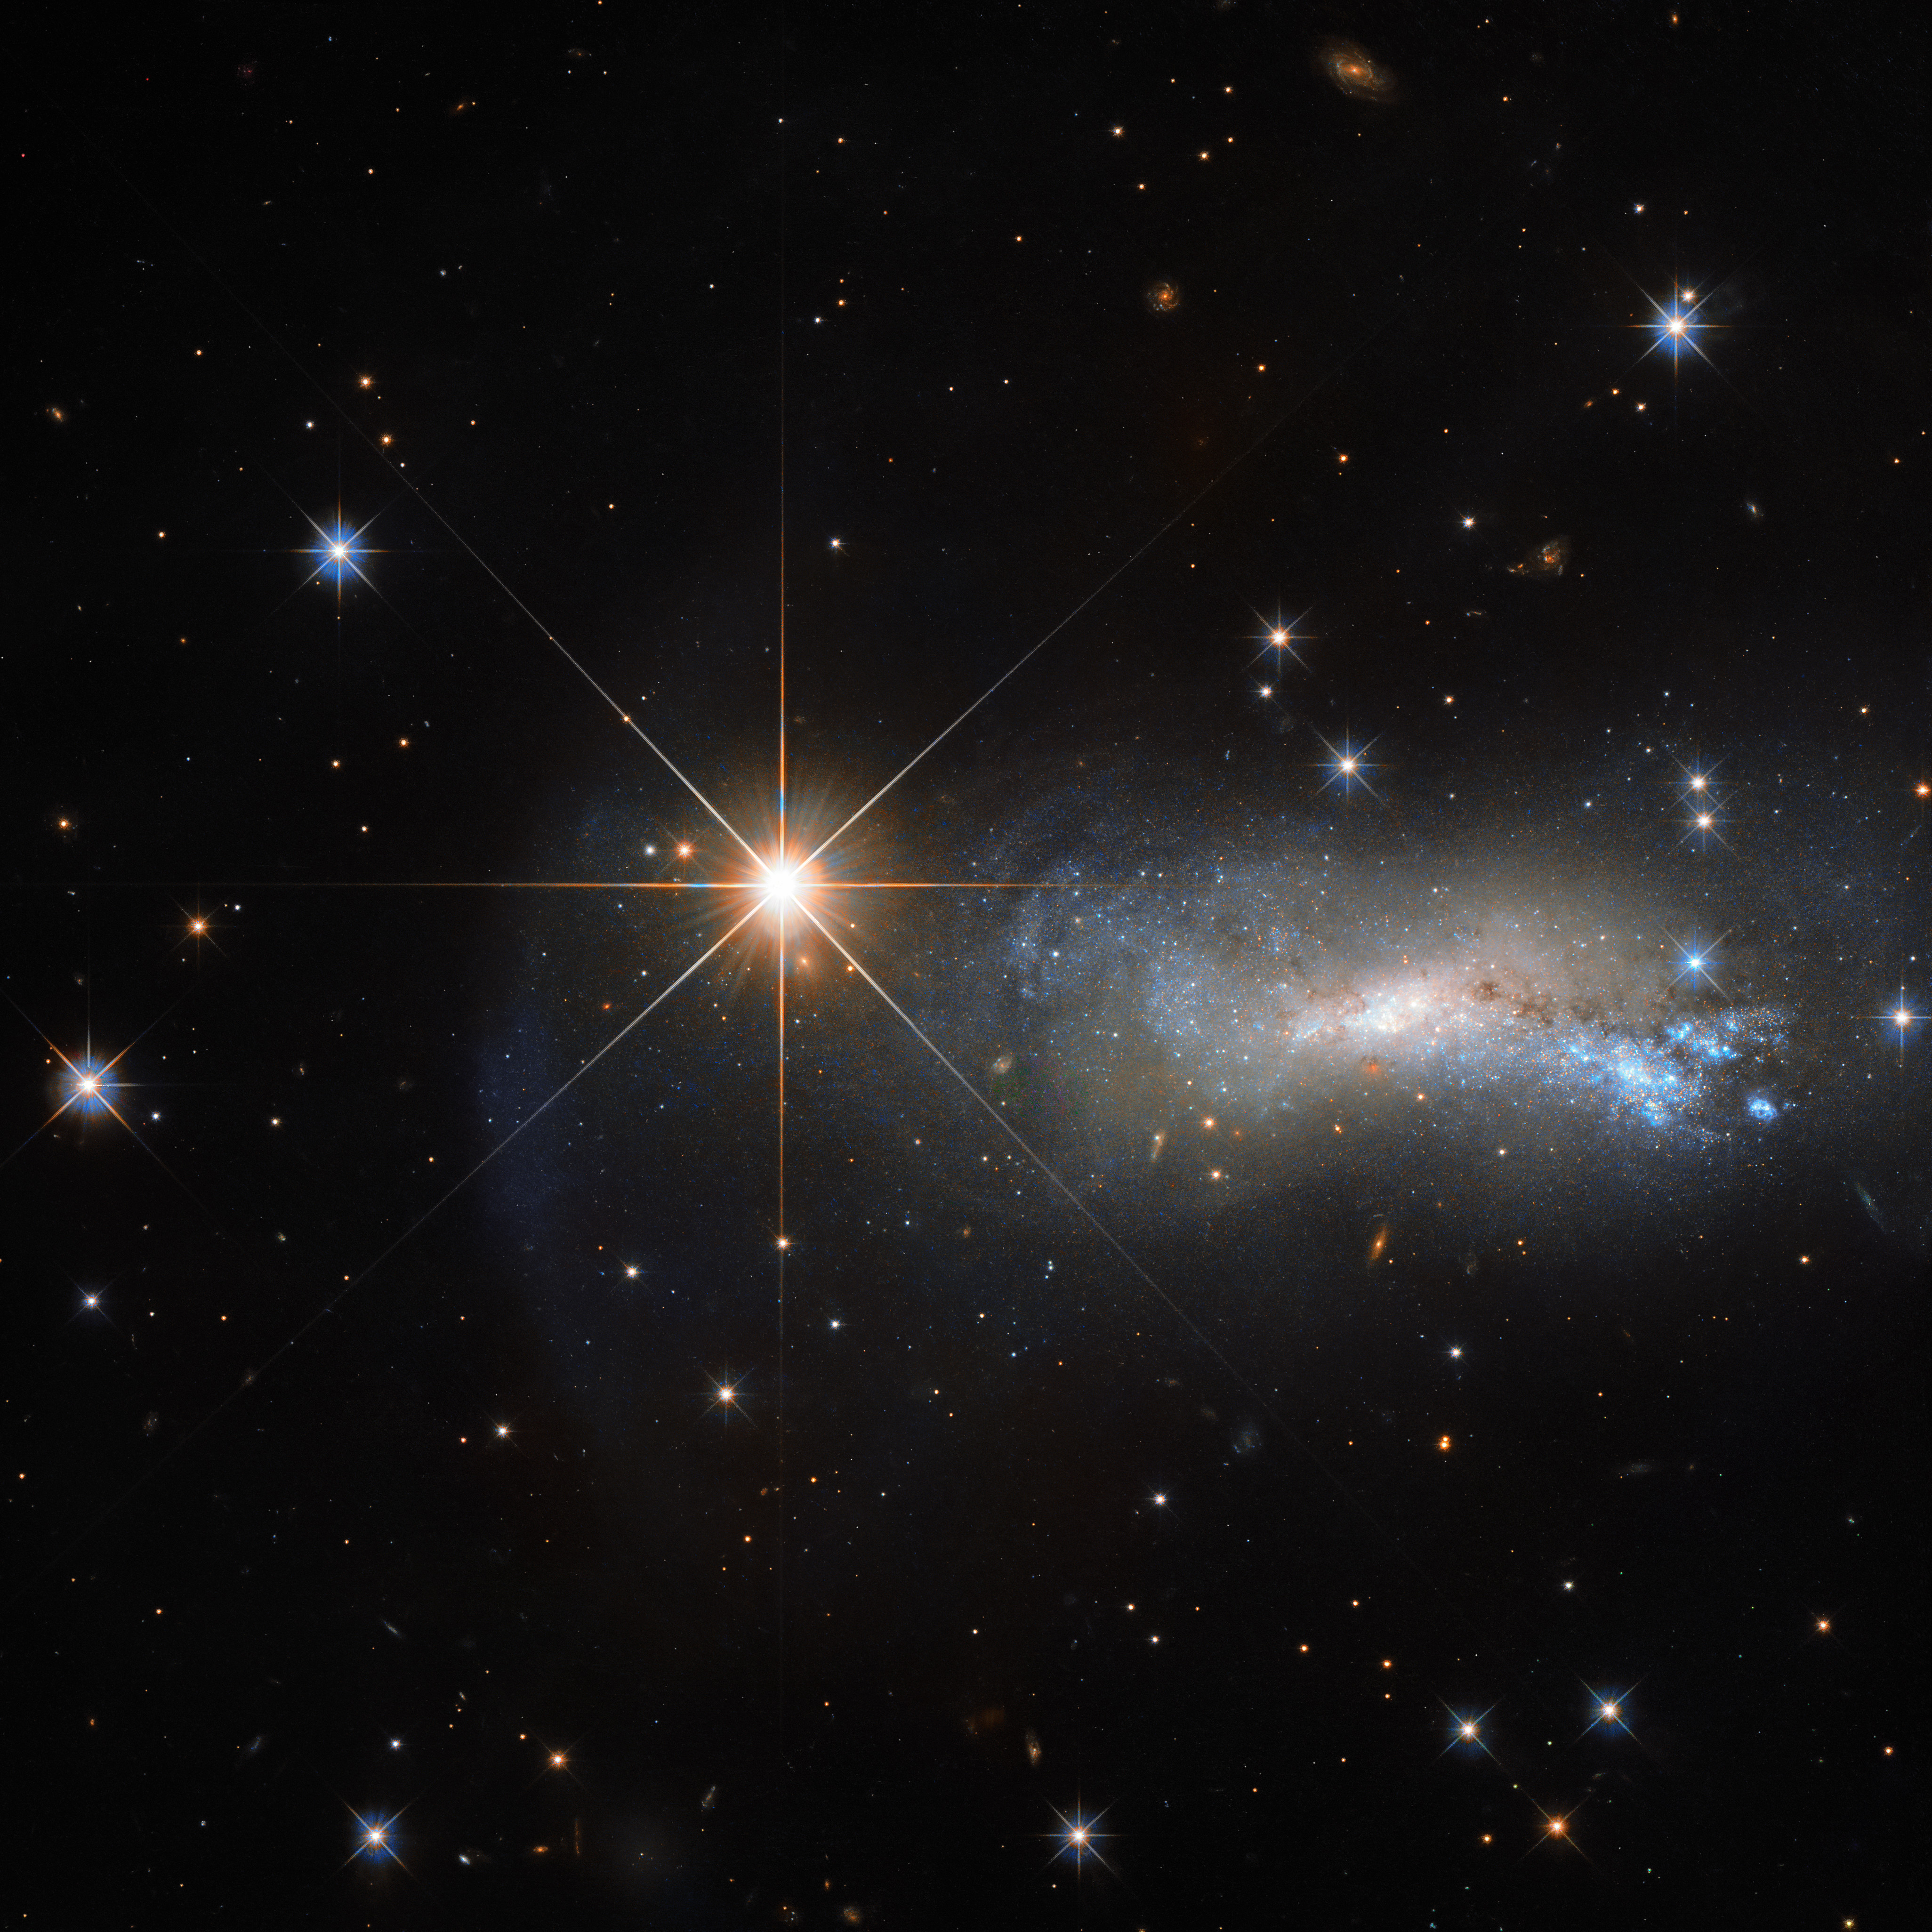 Une planète, une étoile ou une comète peuvent être considérées comme un astre. © ESA/Hubble &amp; NASA